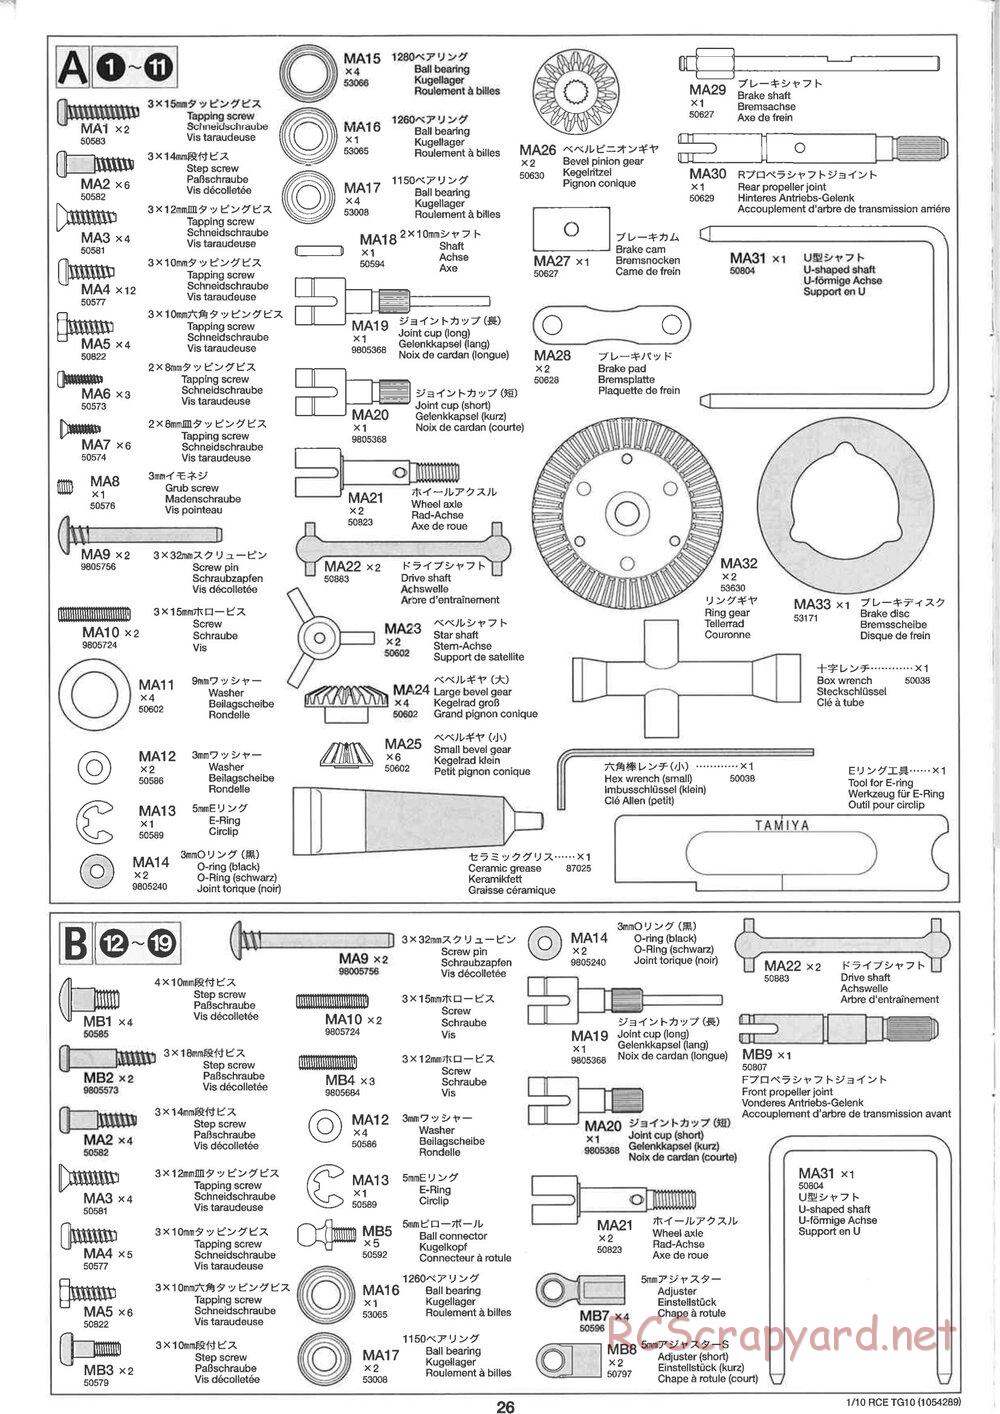 Tamiya - TG10 Mk.1 Chassis - Manual - Page 26